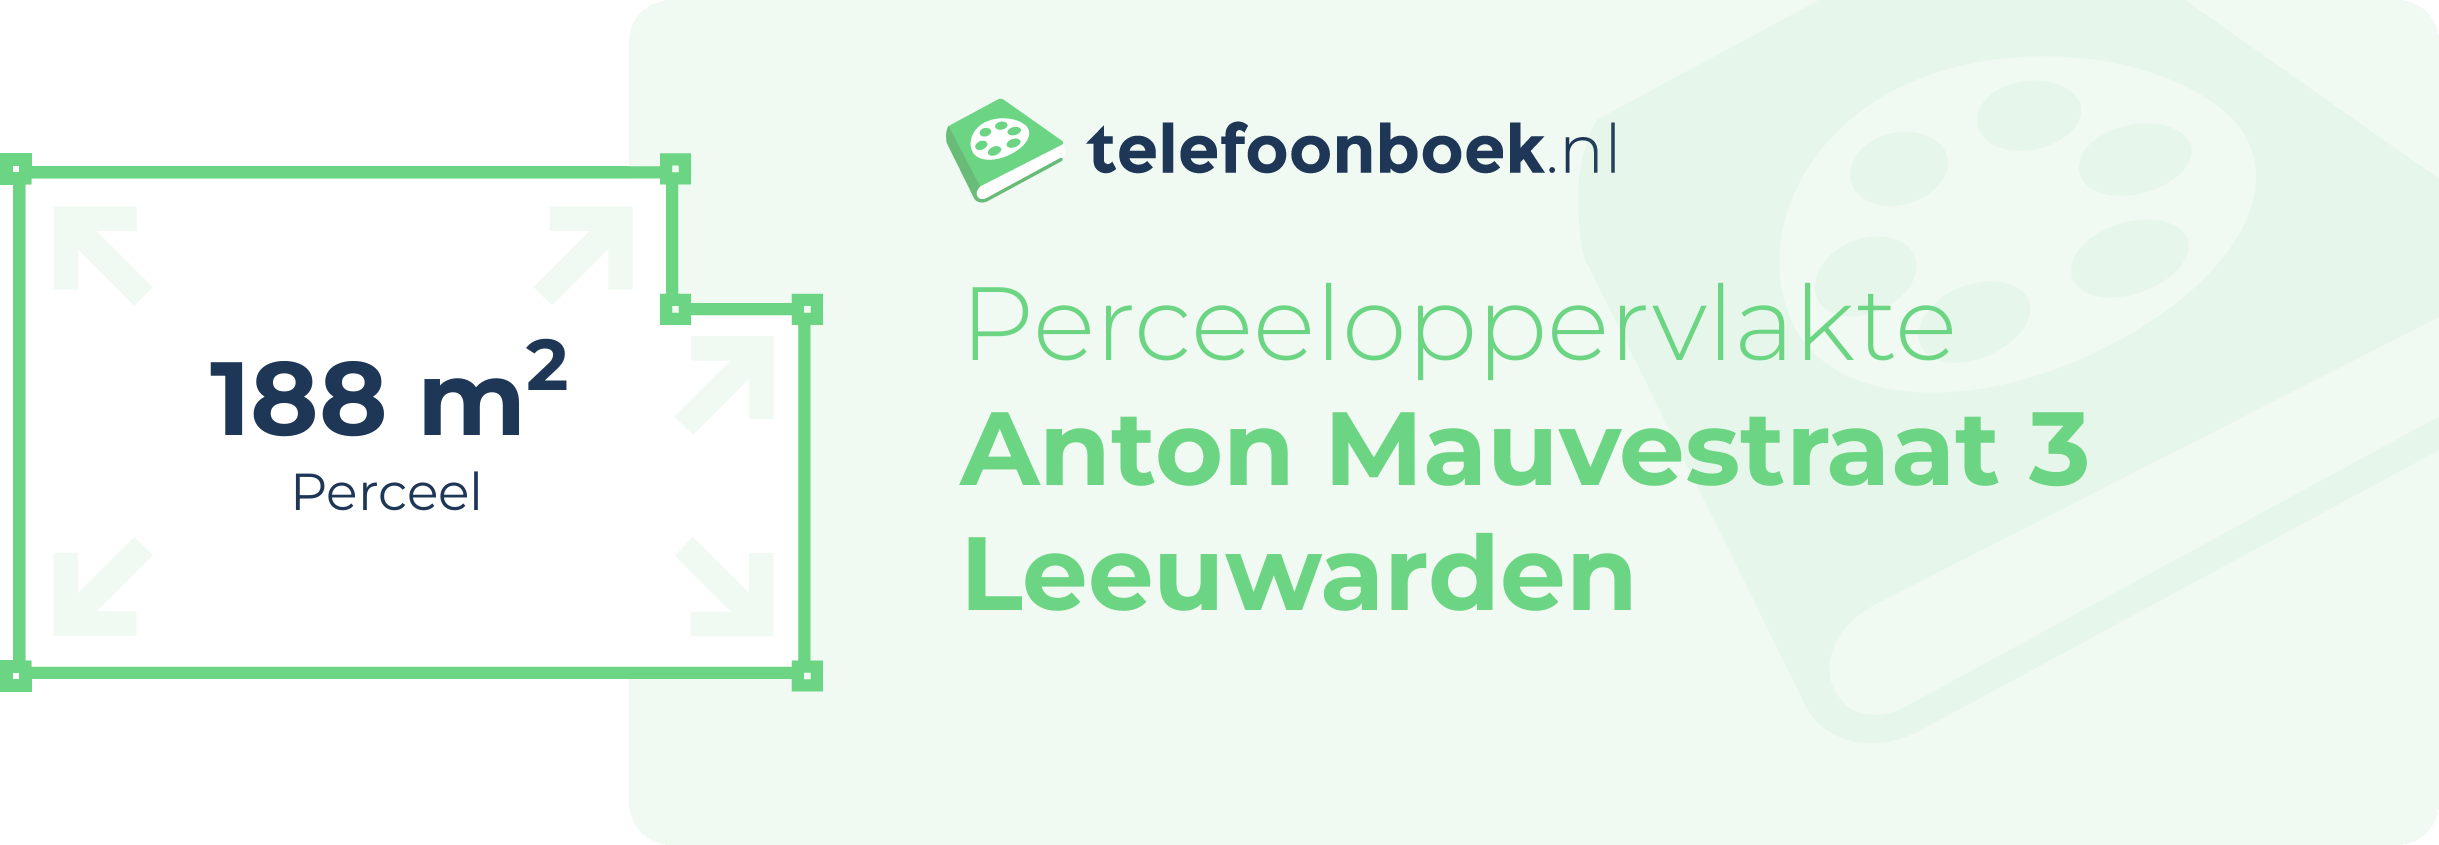 Perceeloppervlakte Anton Mauvestraat 3 Leeuwarden